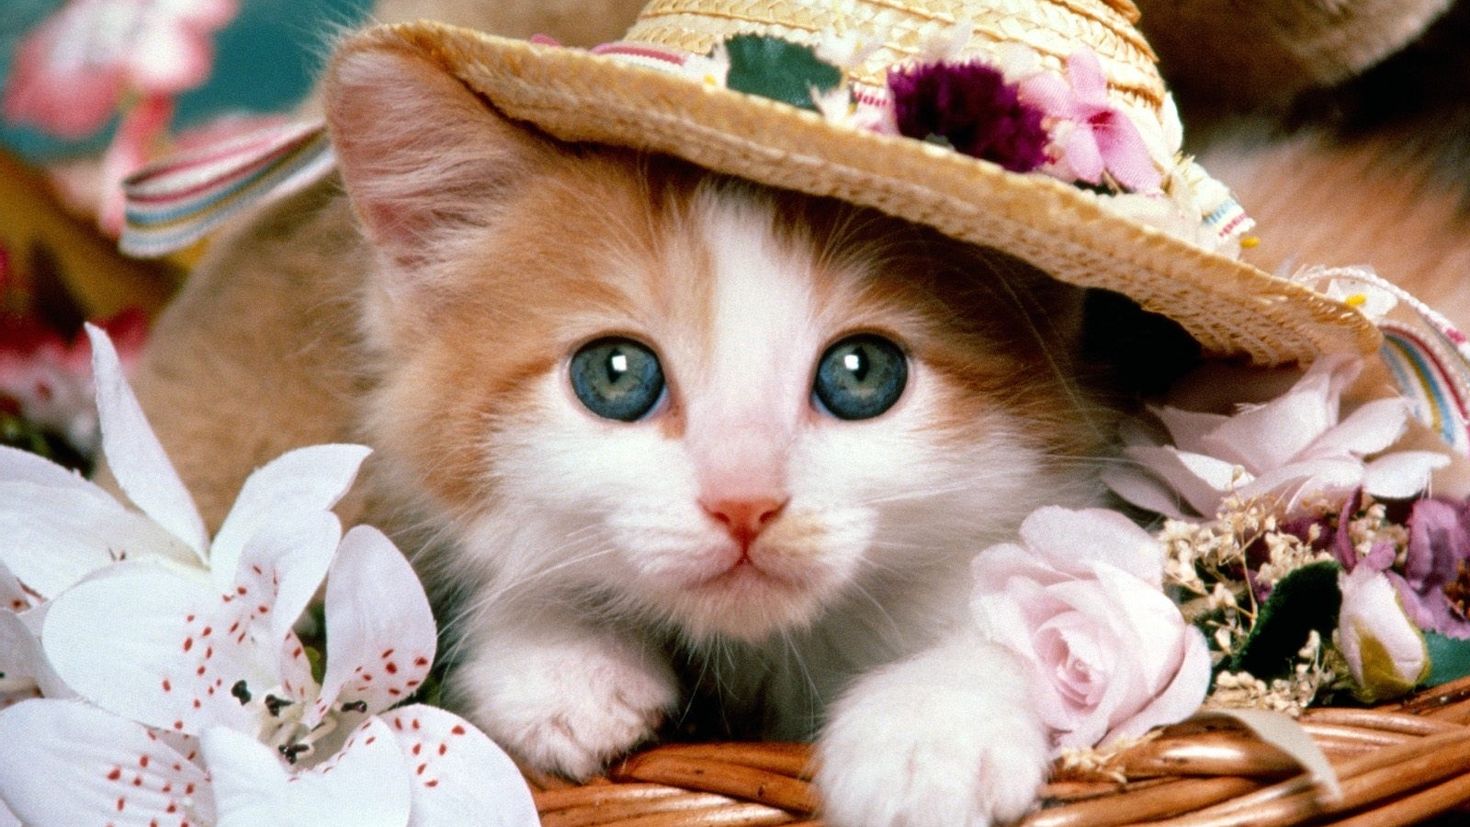 Скачать бесплатно картинку на телефон Животные, Кошки (Коты, Котики). 